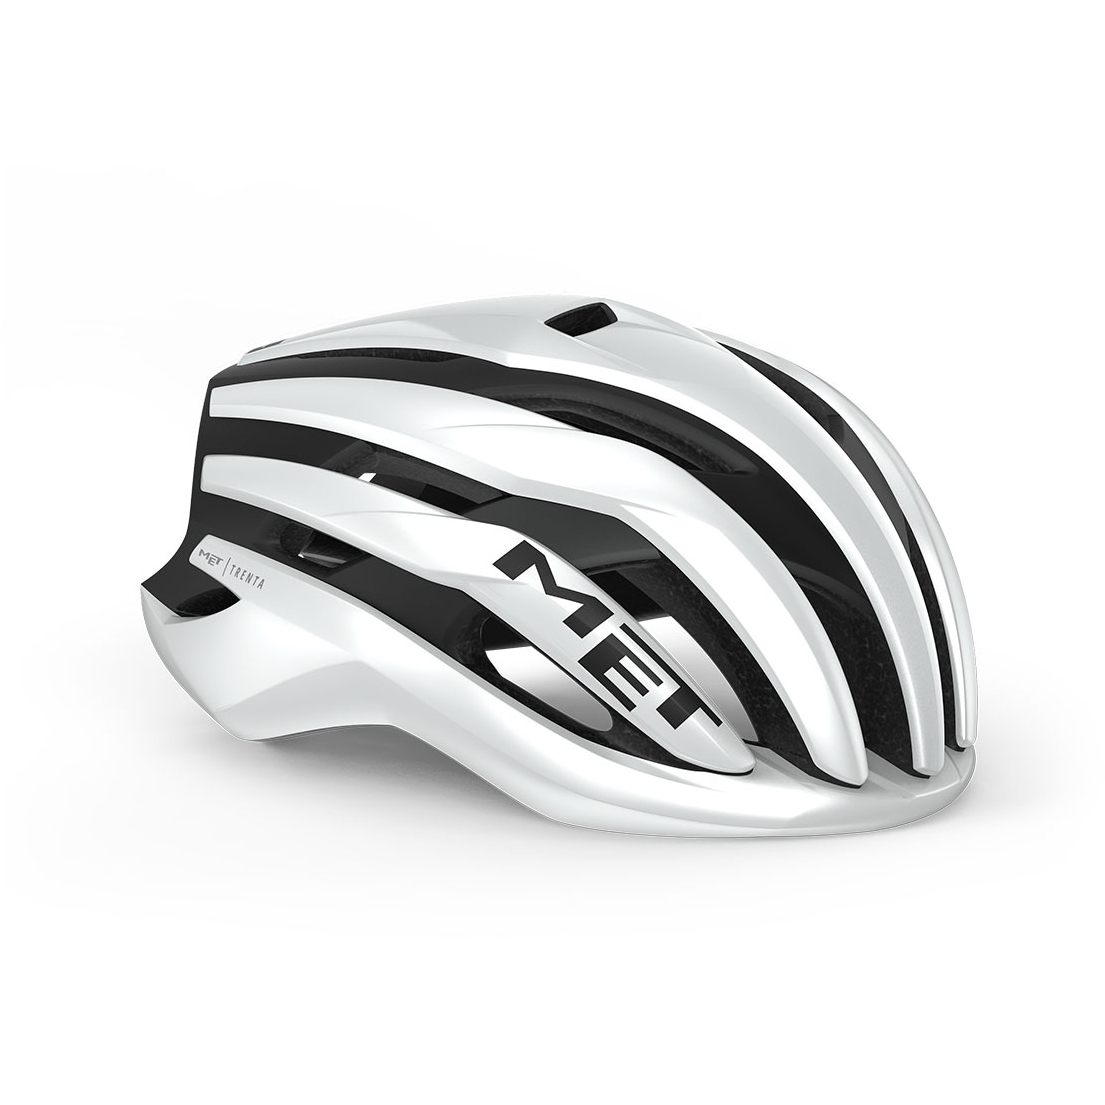 Produktbild von MET Trenta MIPS Helm - white/black matt glossy